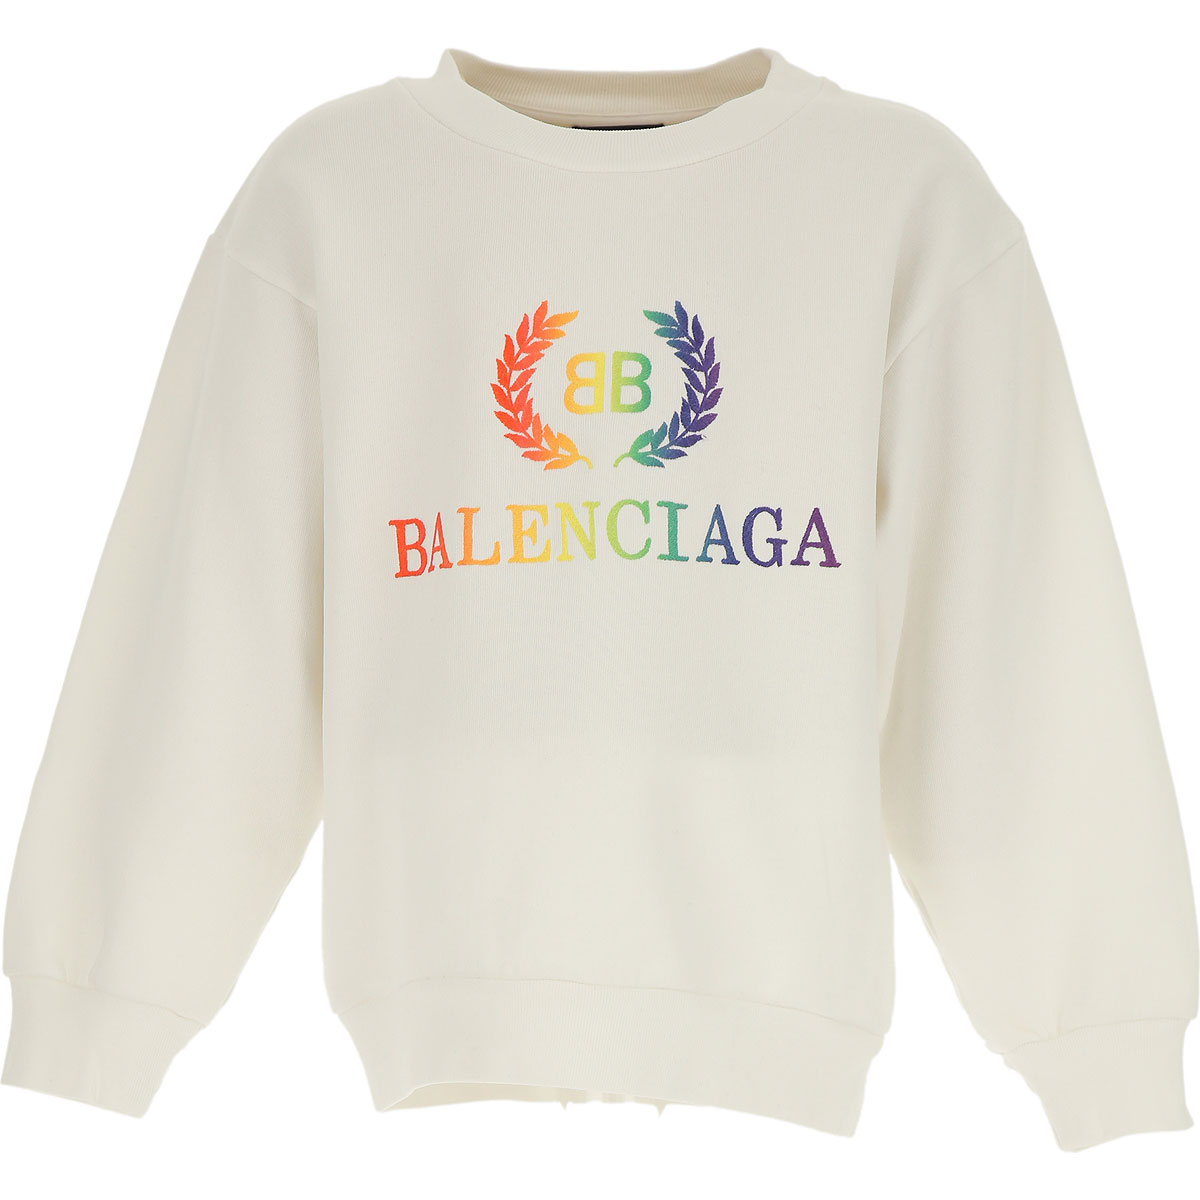 Balenciaga Kinder Sweatshirt & Kapuzenpullover für Jungen Günstig im Sale, Weiss, Baumwolle, 2017, 4Y 6Y 8Y